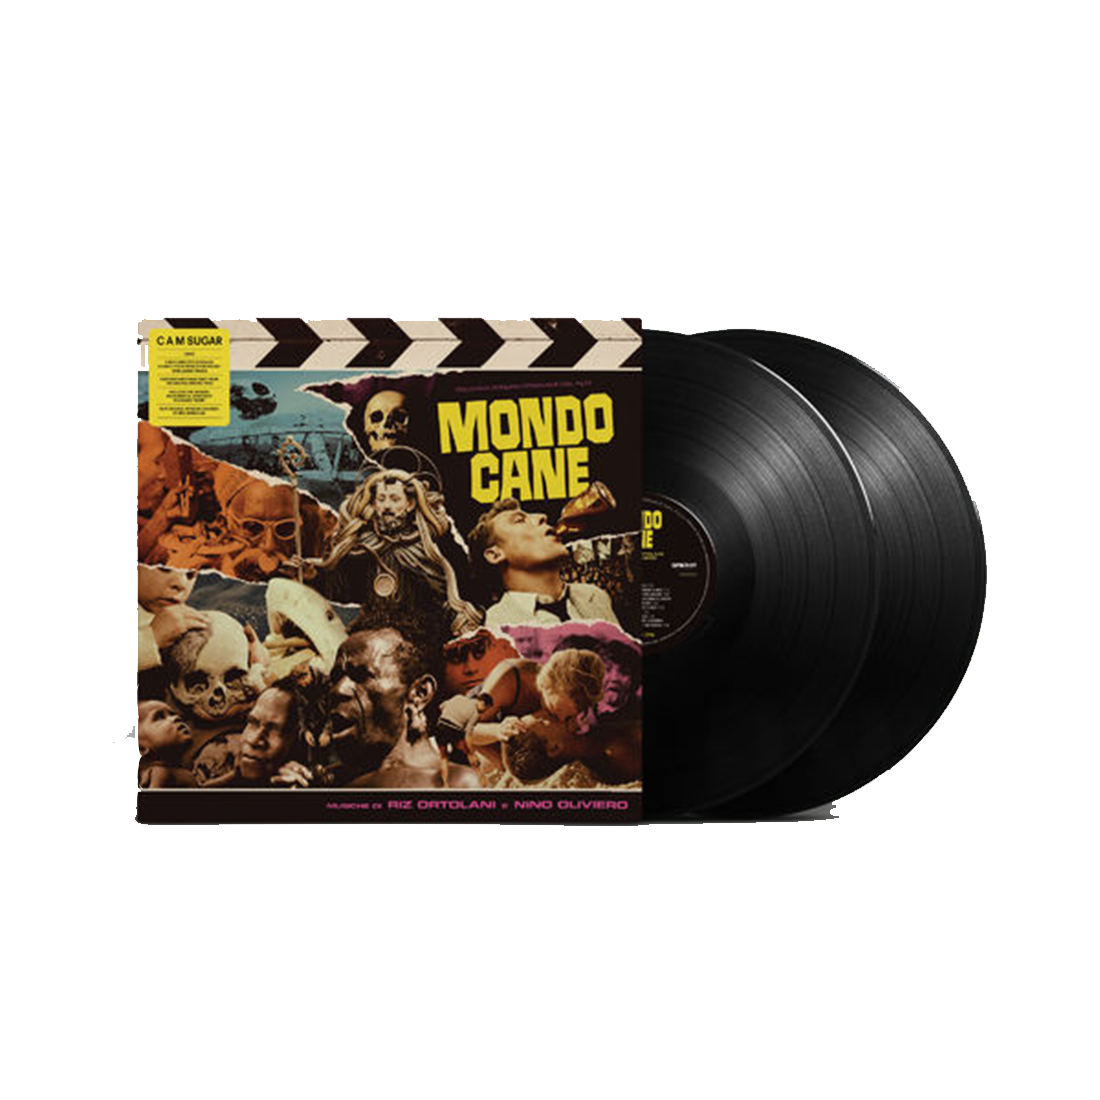 Riz Ortolani, Nino Oliviero - Mondo Cane: Vinyl 2LP